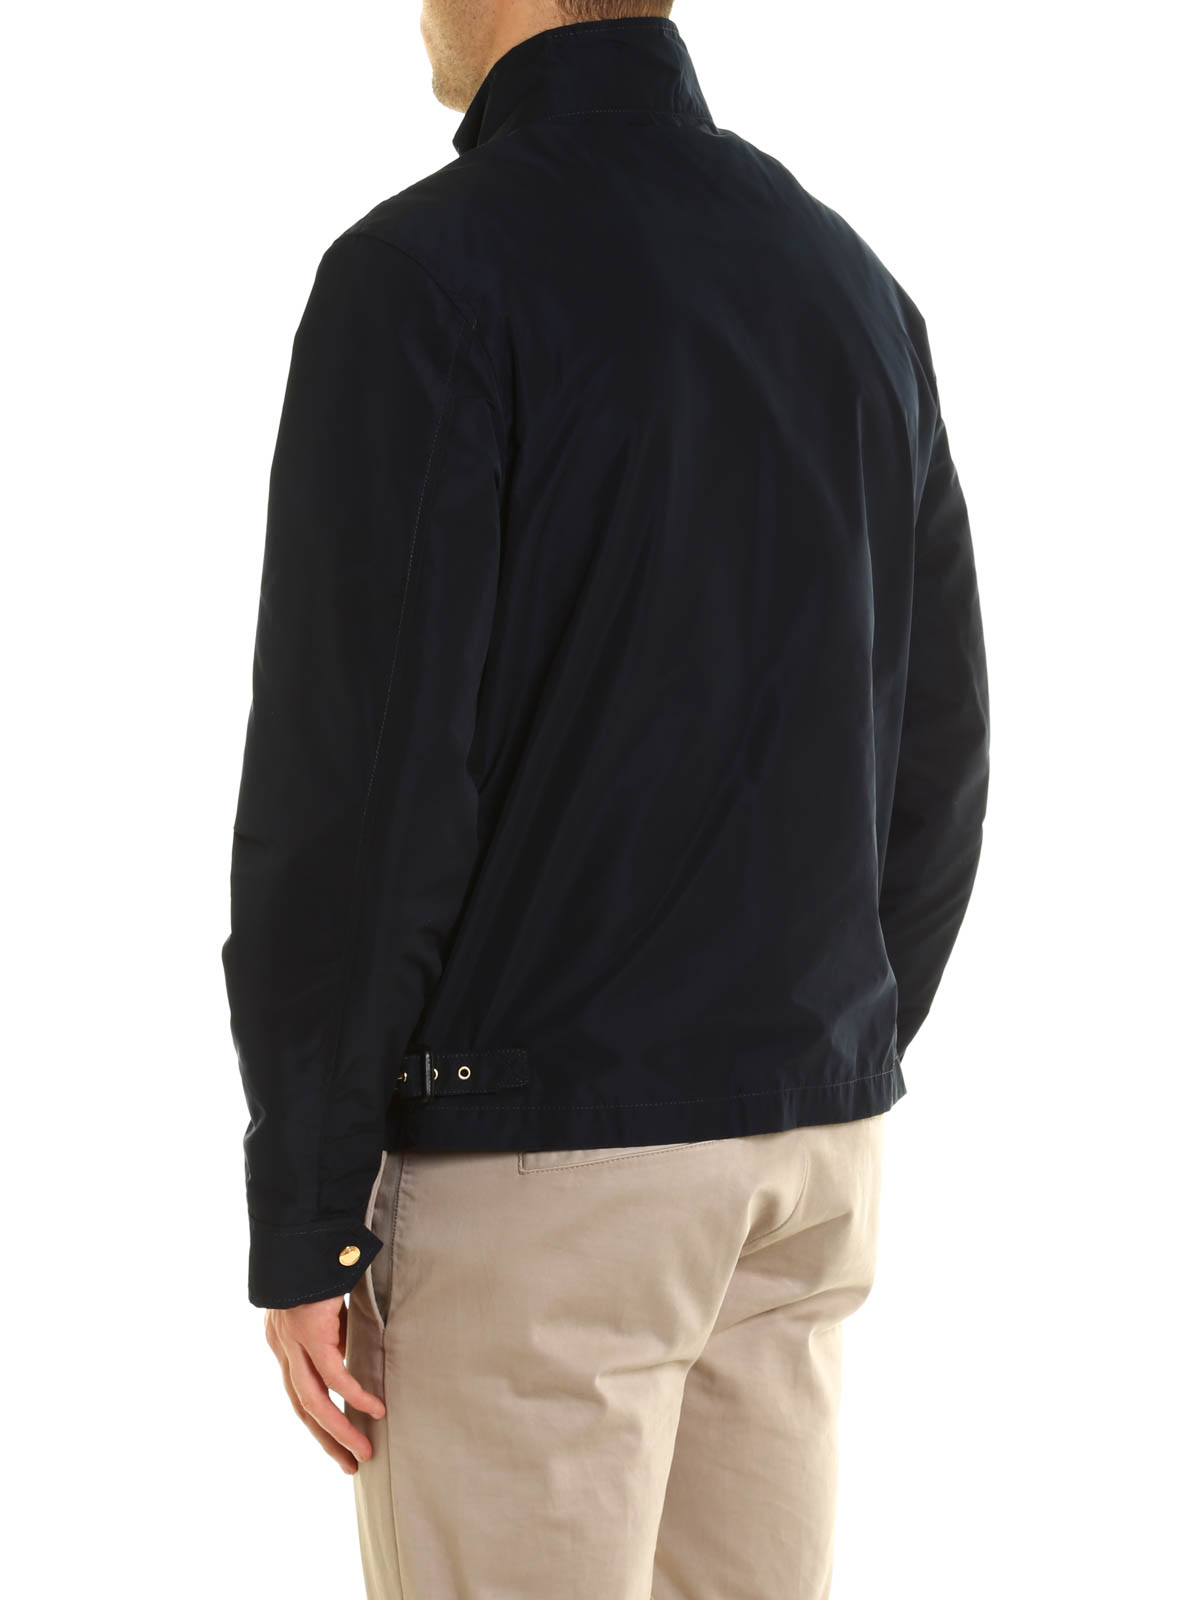 Burberry - Brighton jacket - casual jackets - 3998772 | iKRIX.com